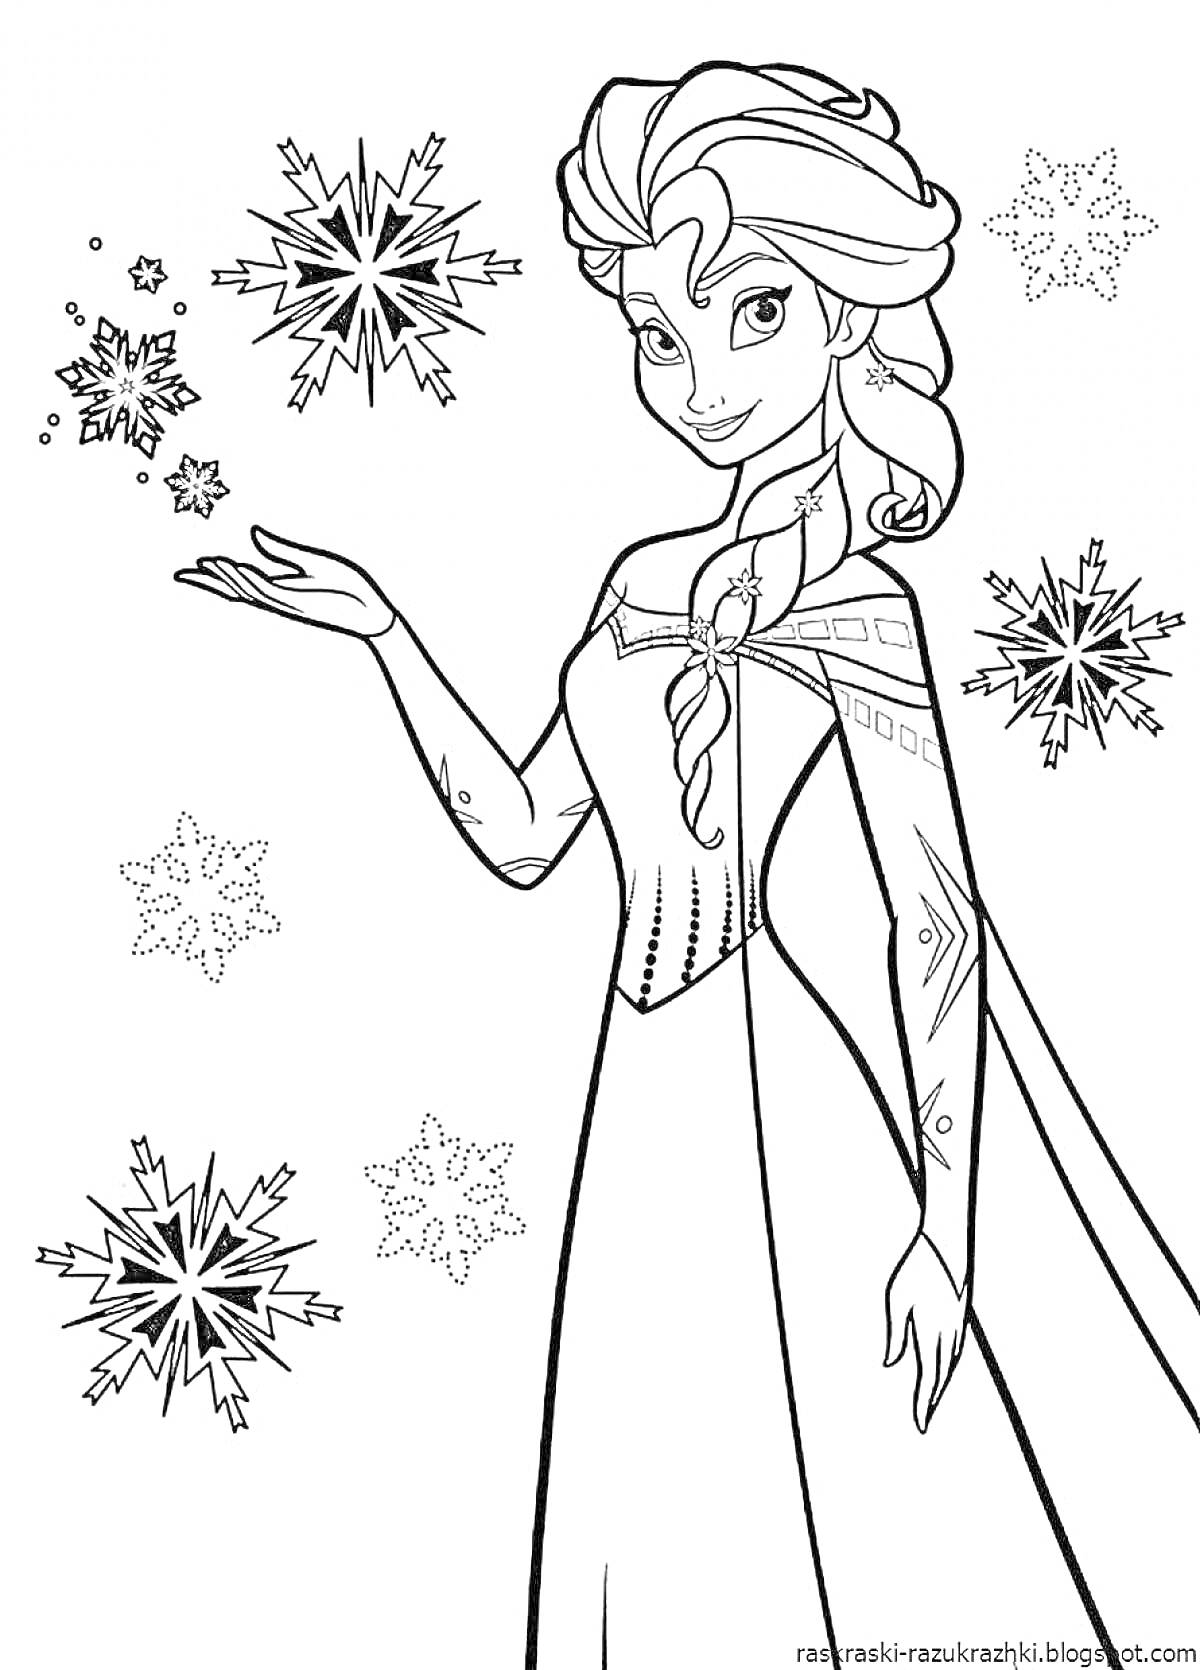 Раскраска Эльза в длинном платье с летящими снежинками